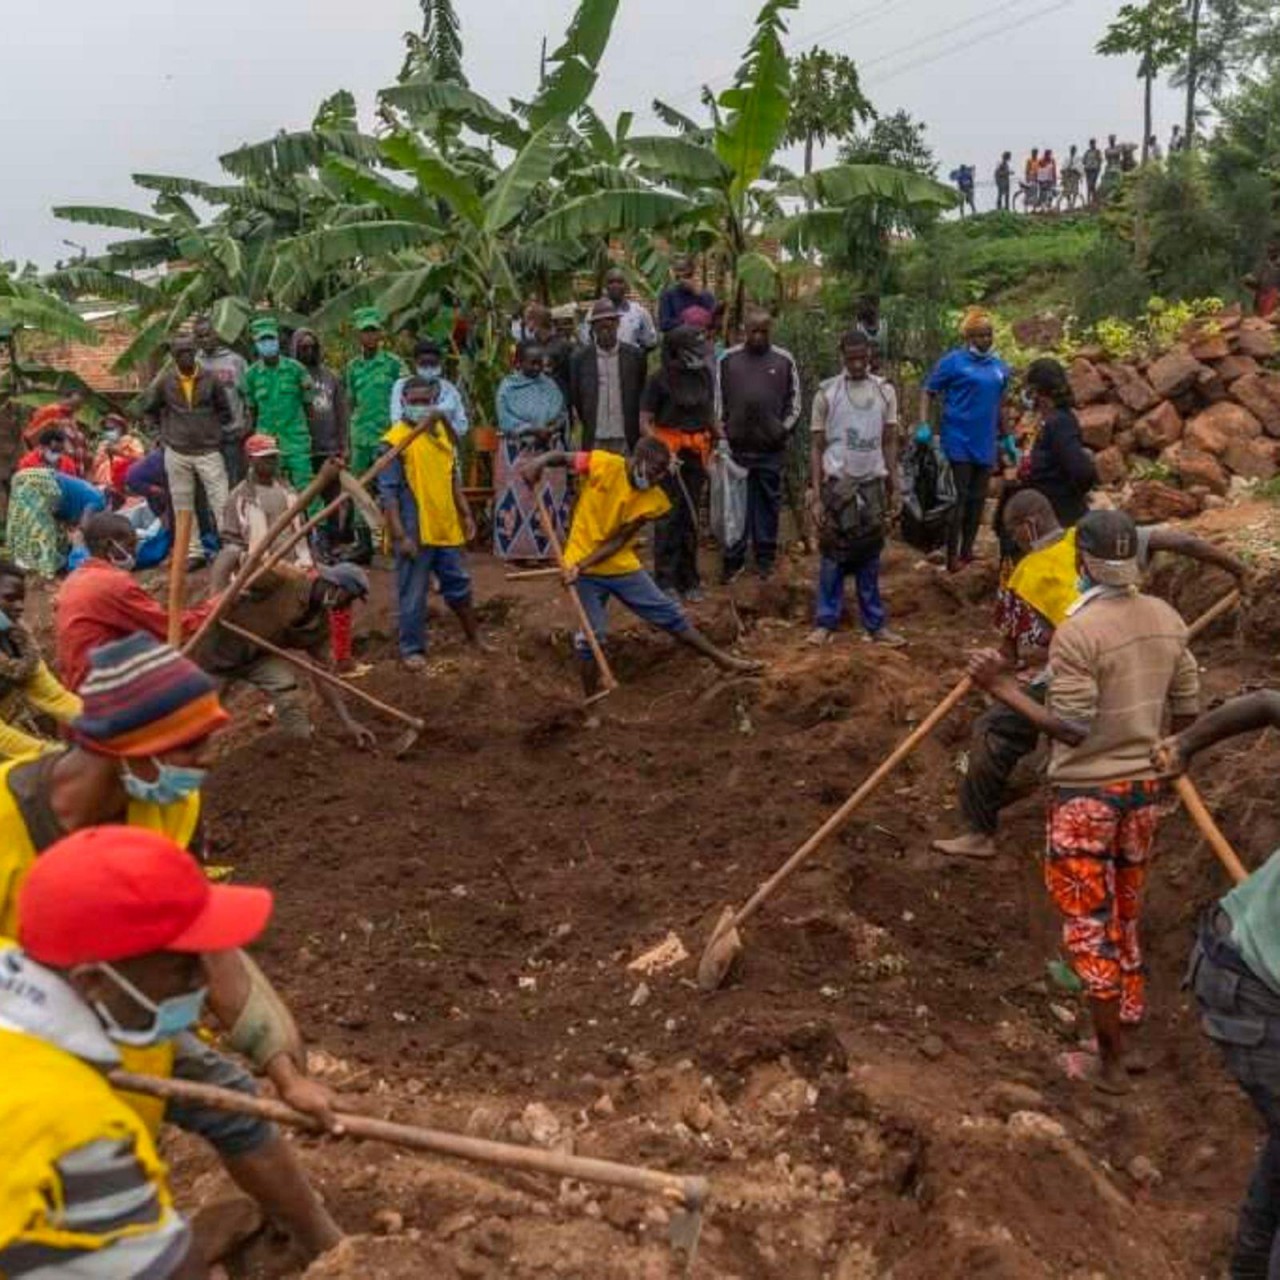 Rwanda phát hiện hài cốt của gần 120 nạn nhân của vụ diệt chủng chống lại người Tutsi hồi năm 1994 từ các ngôi mộ tập thể ở một ngôi làng thuộc quận Huye, miền Nam Rwanda. (Nguồn: AFP)